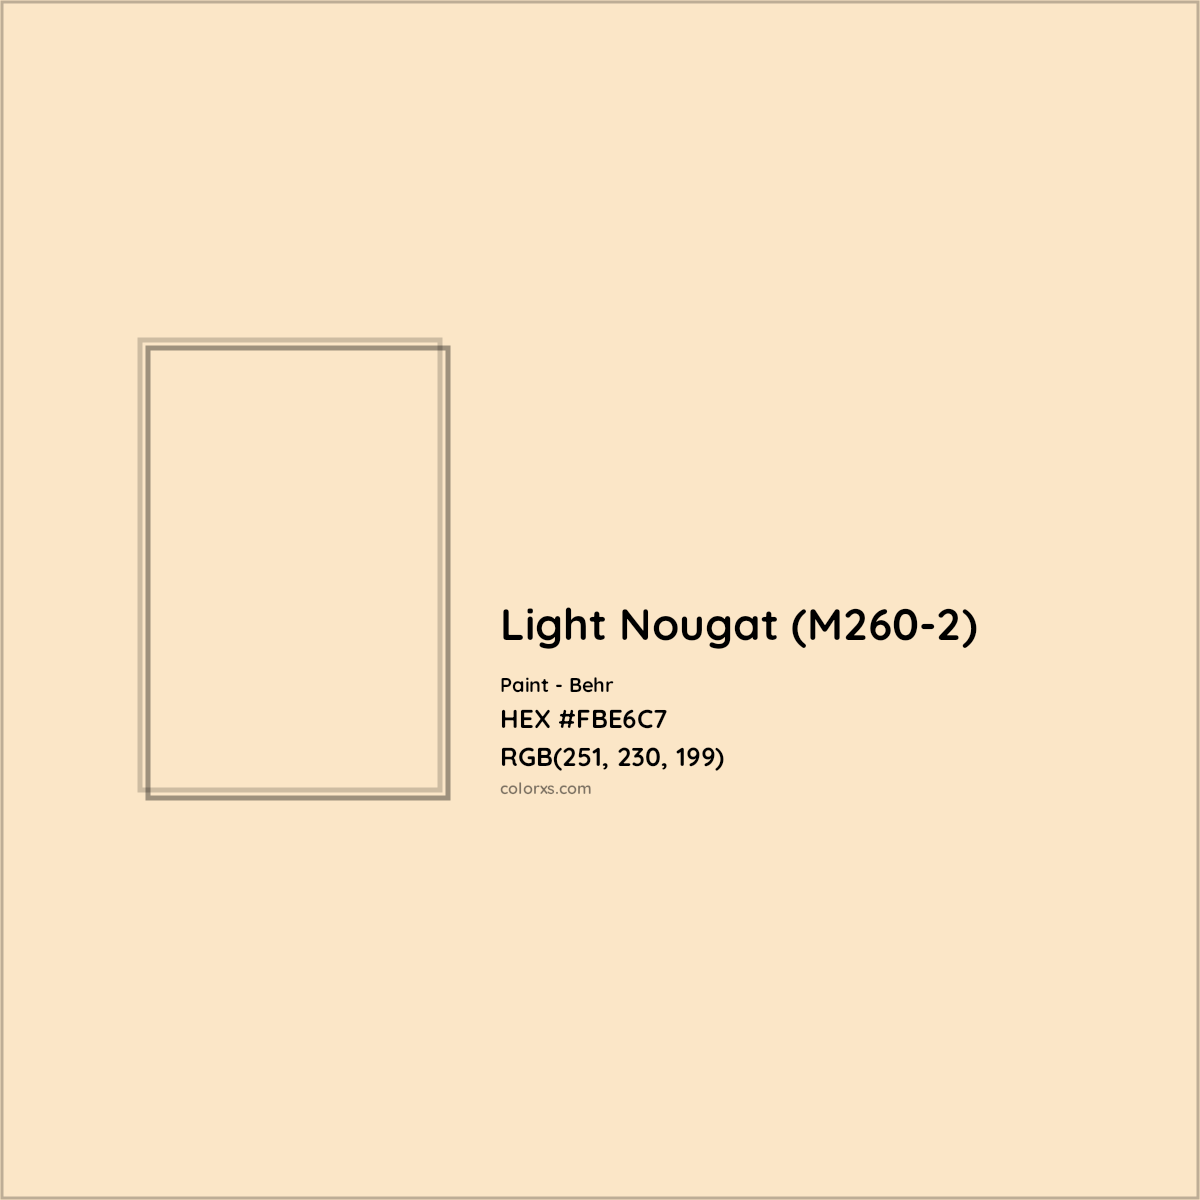 HEX #FBE6C7 Light Nougat (M260-2) Paint Behr - Color Code